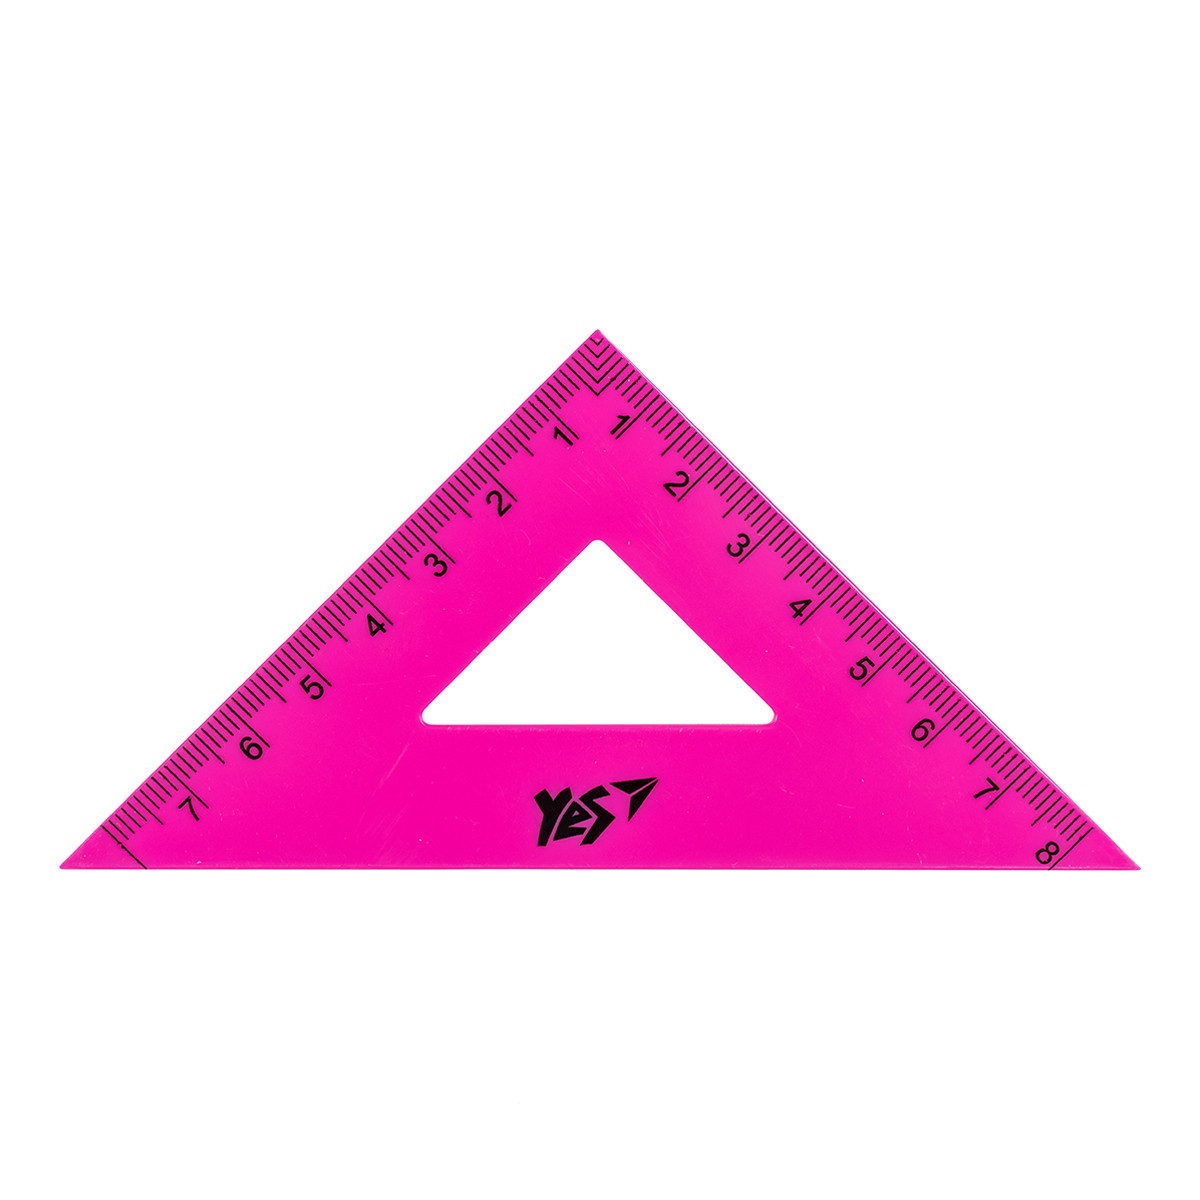 Трикутник рівнобедрений YES 8 см (370575)